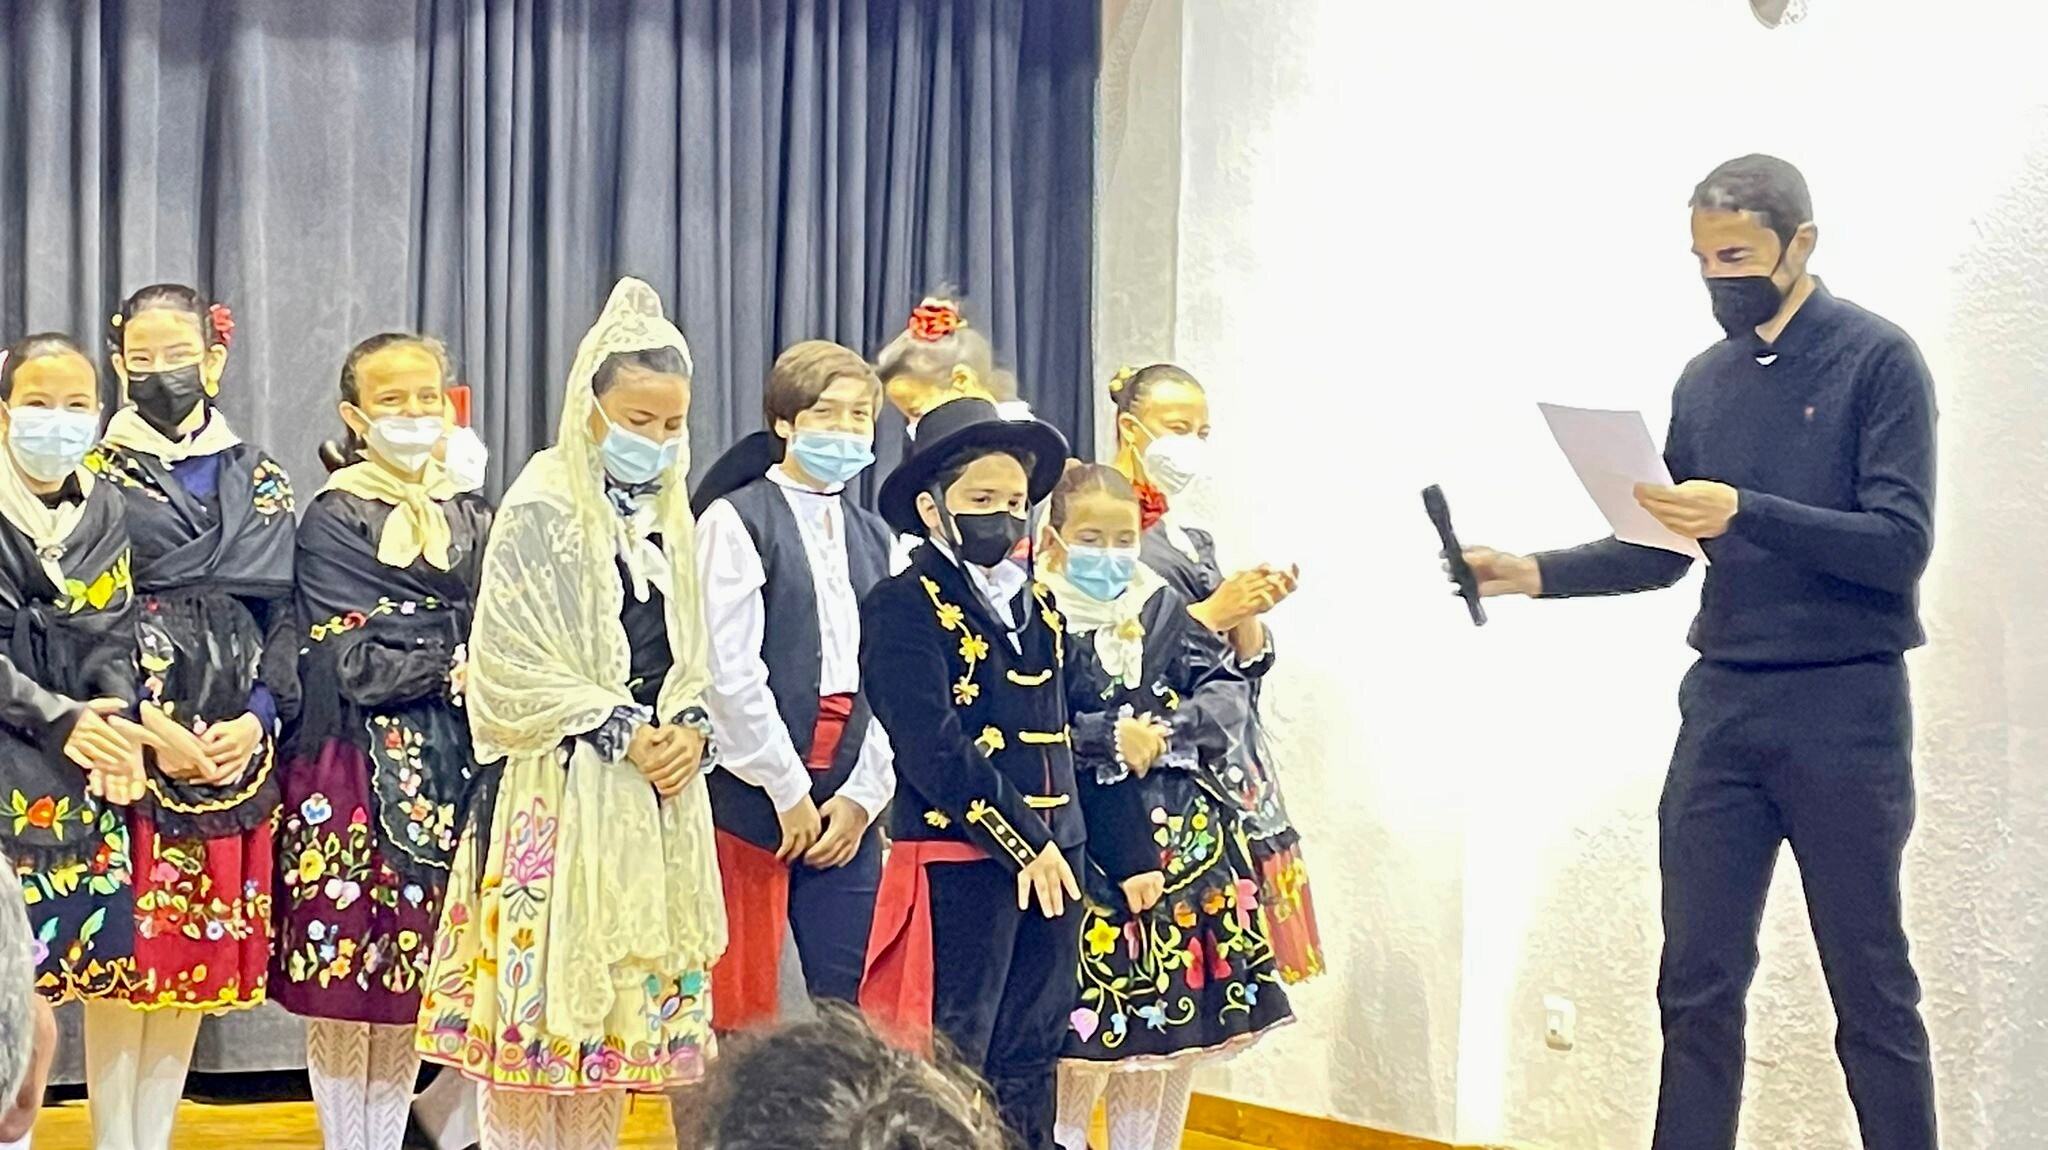 El colegio celebra el Día Escolar de Extremadura con un 'Sí quiero' muy tradicional